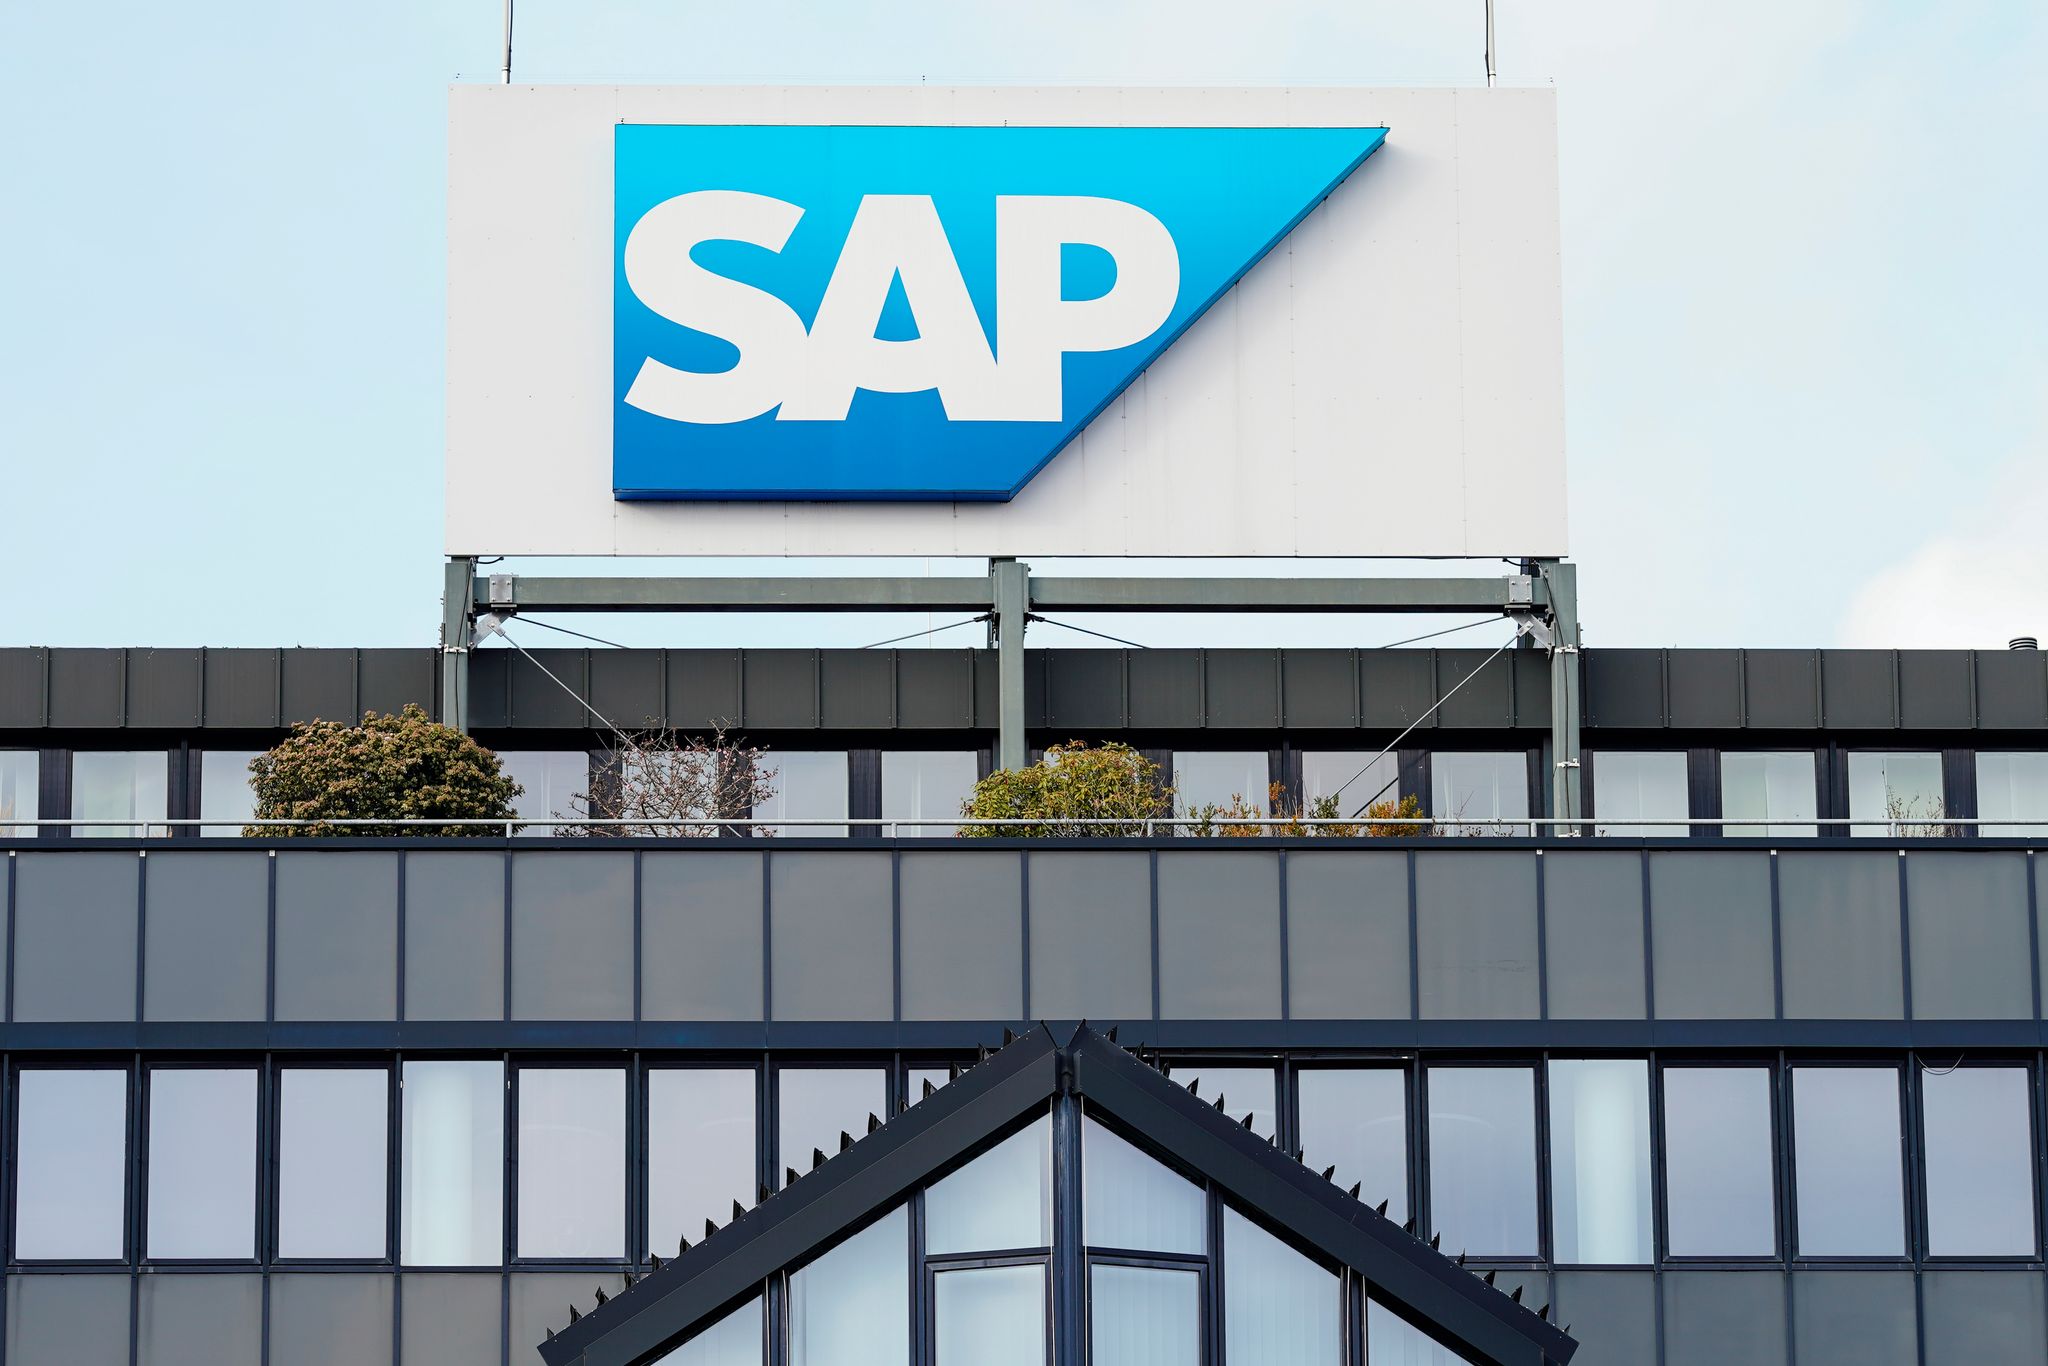 SAP streicht mehr Stellen als geplant – Gewinn wächst stark